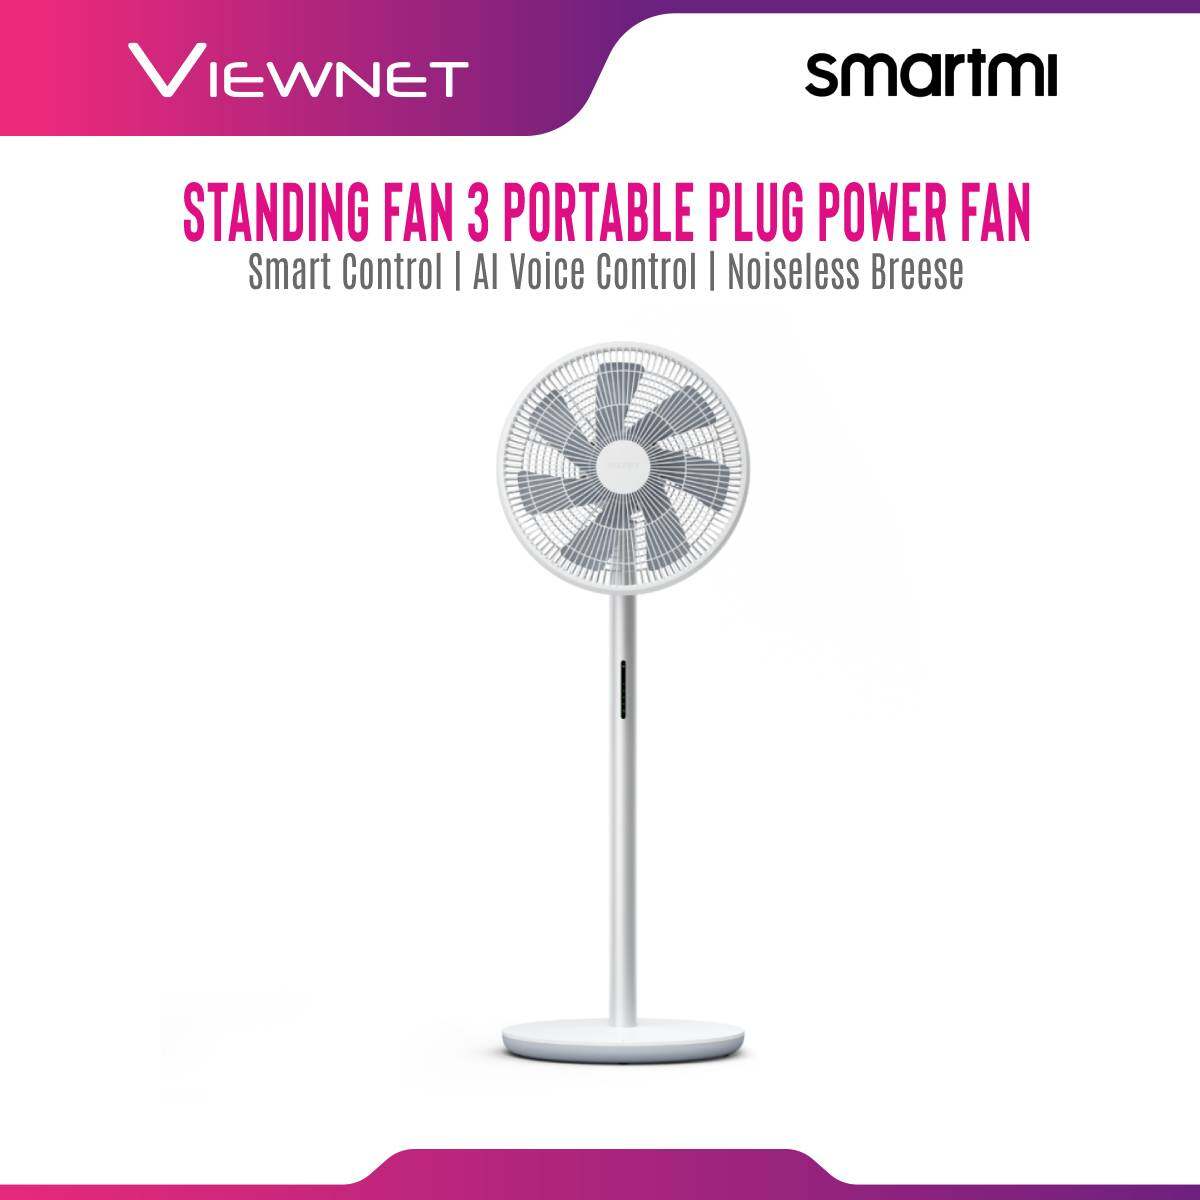 Smartmi Standing Fan 3 Portable Plug Power Fan